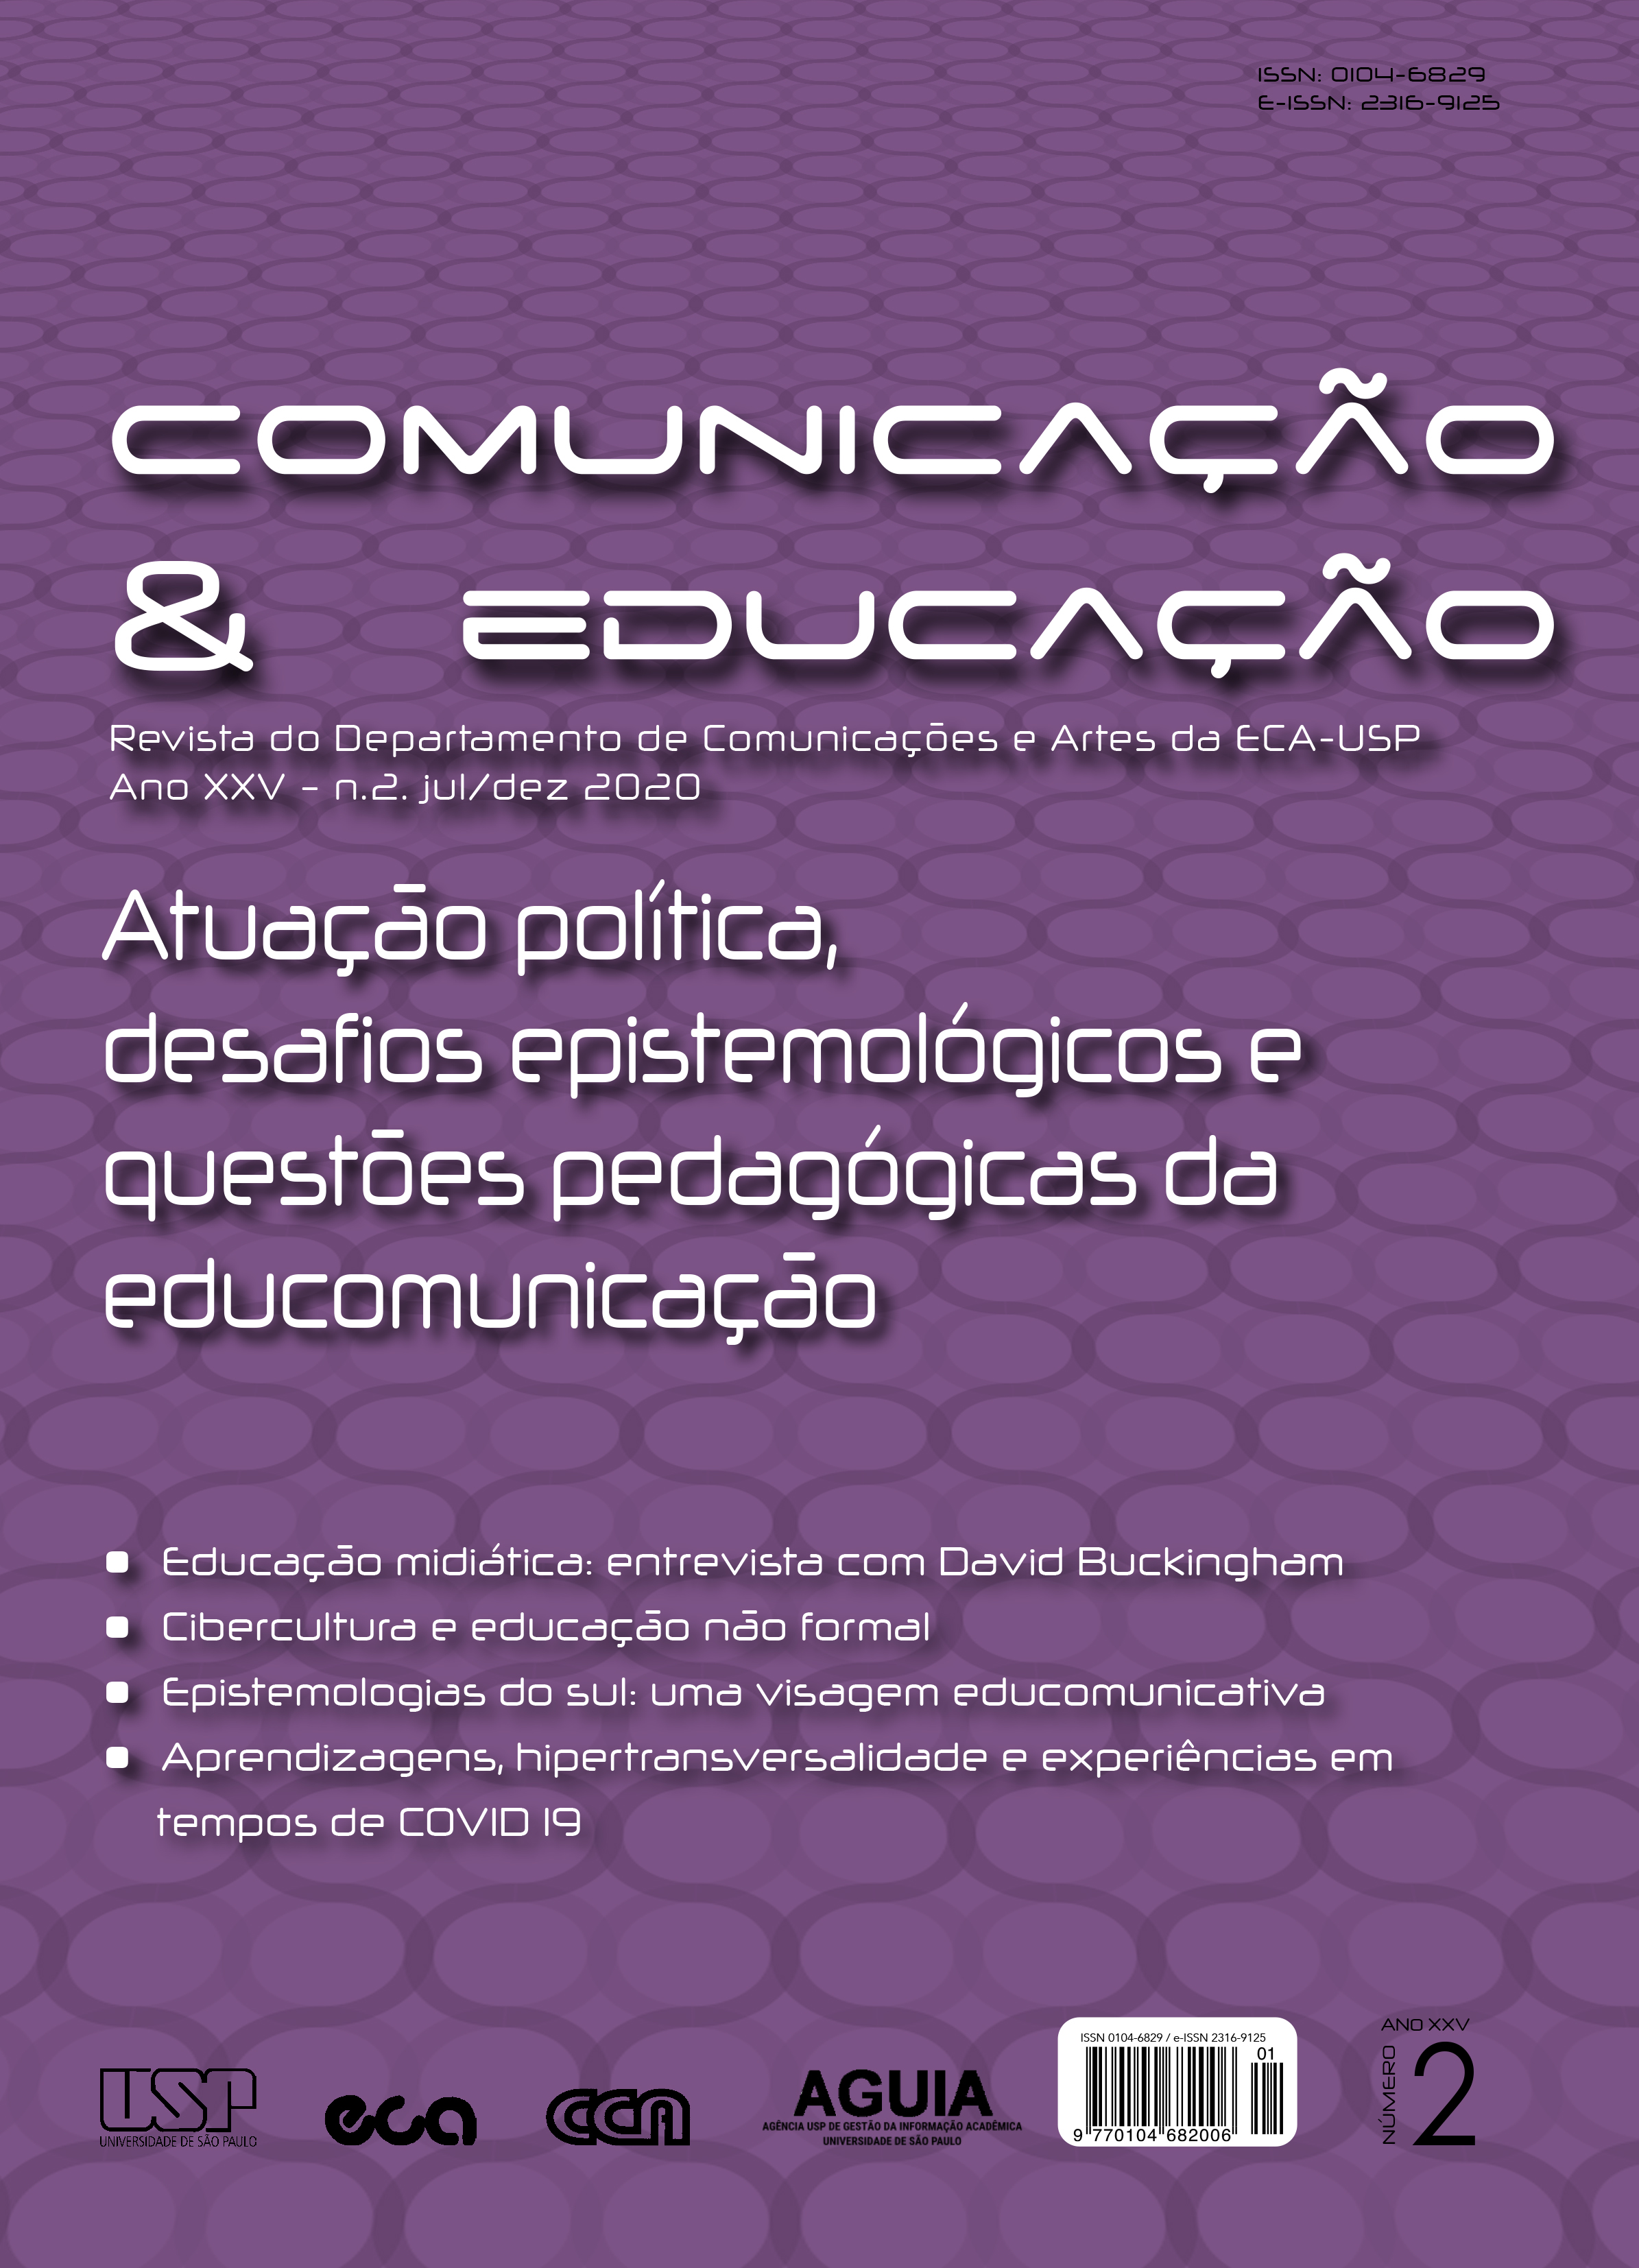 					Ver Vol. 25 Núm. 2 (2020): Atuação política, desafios epistemológicos e questões pedagógicas da educomunicação
				